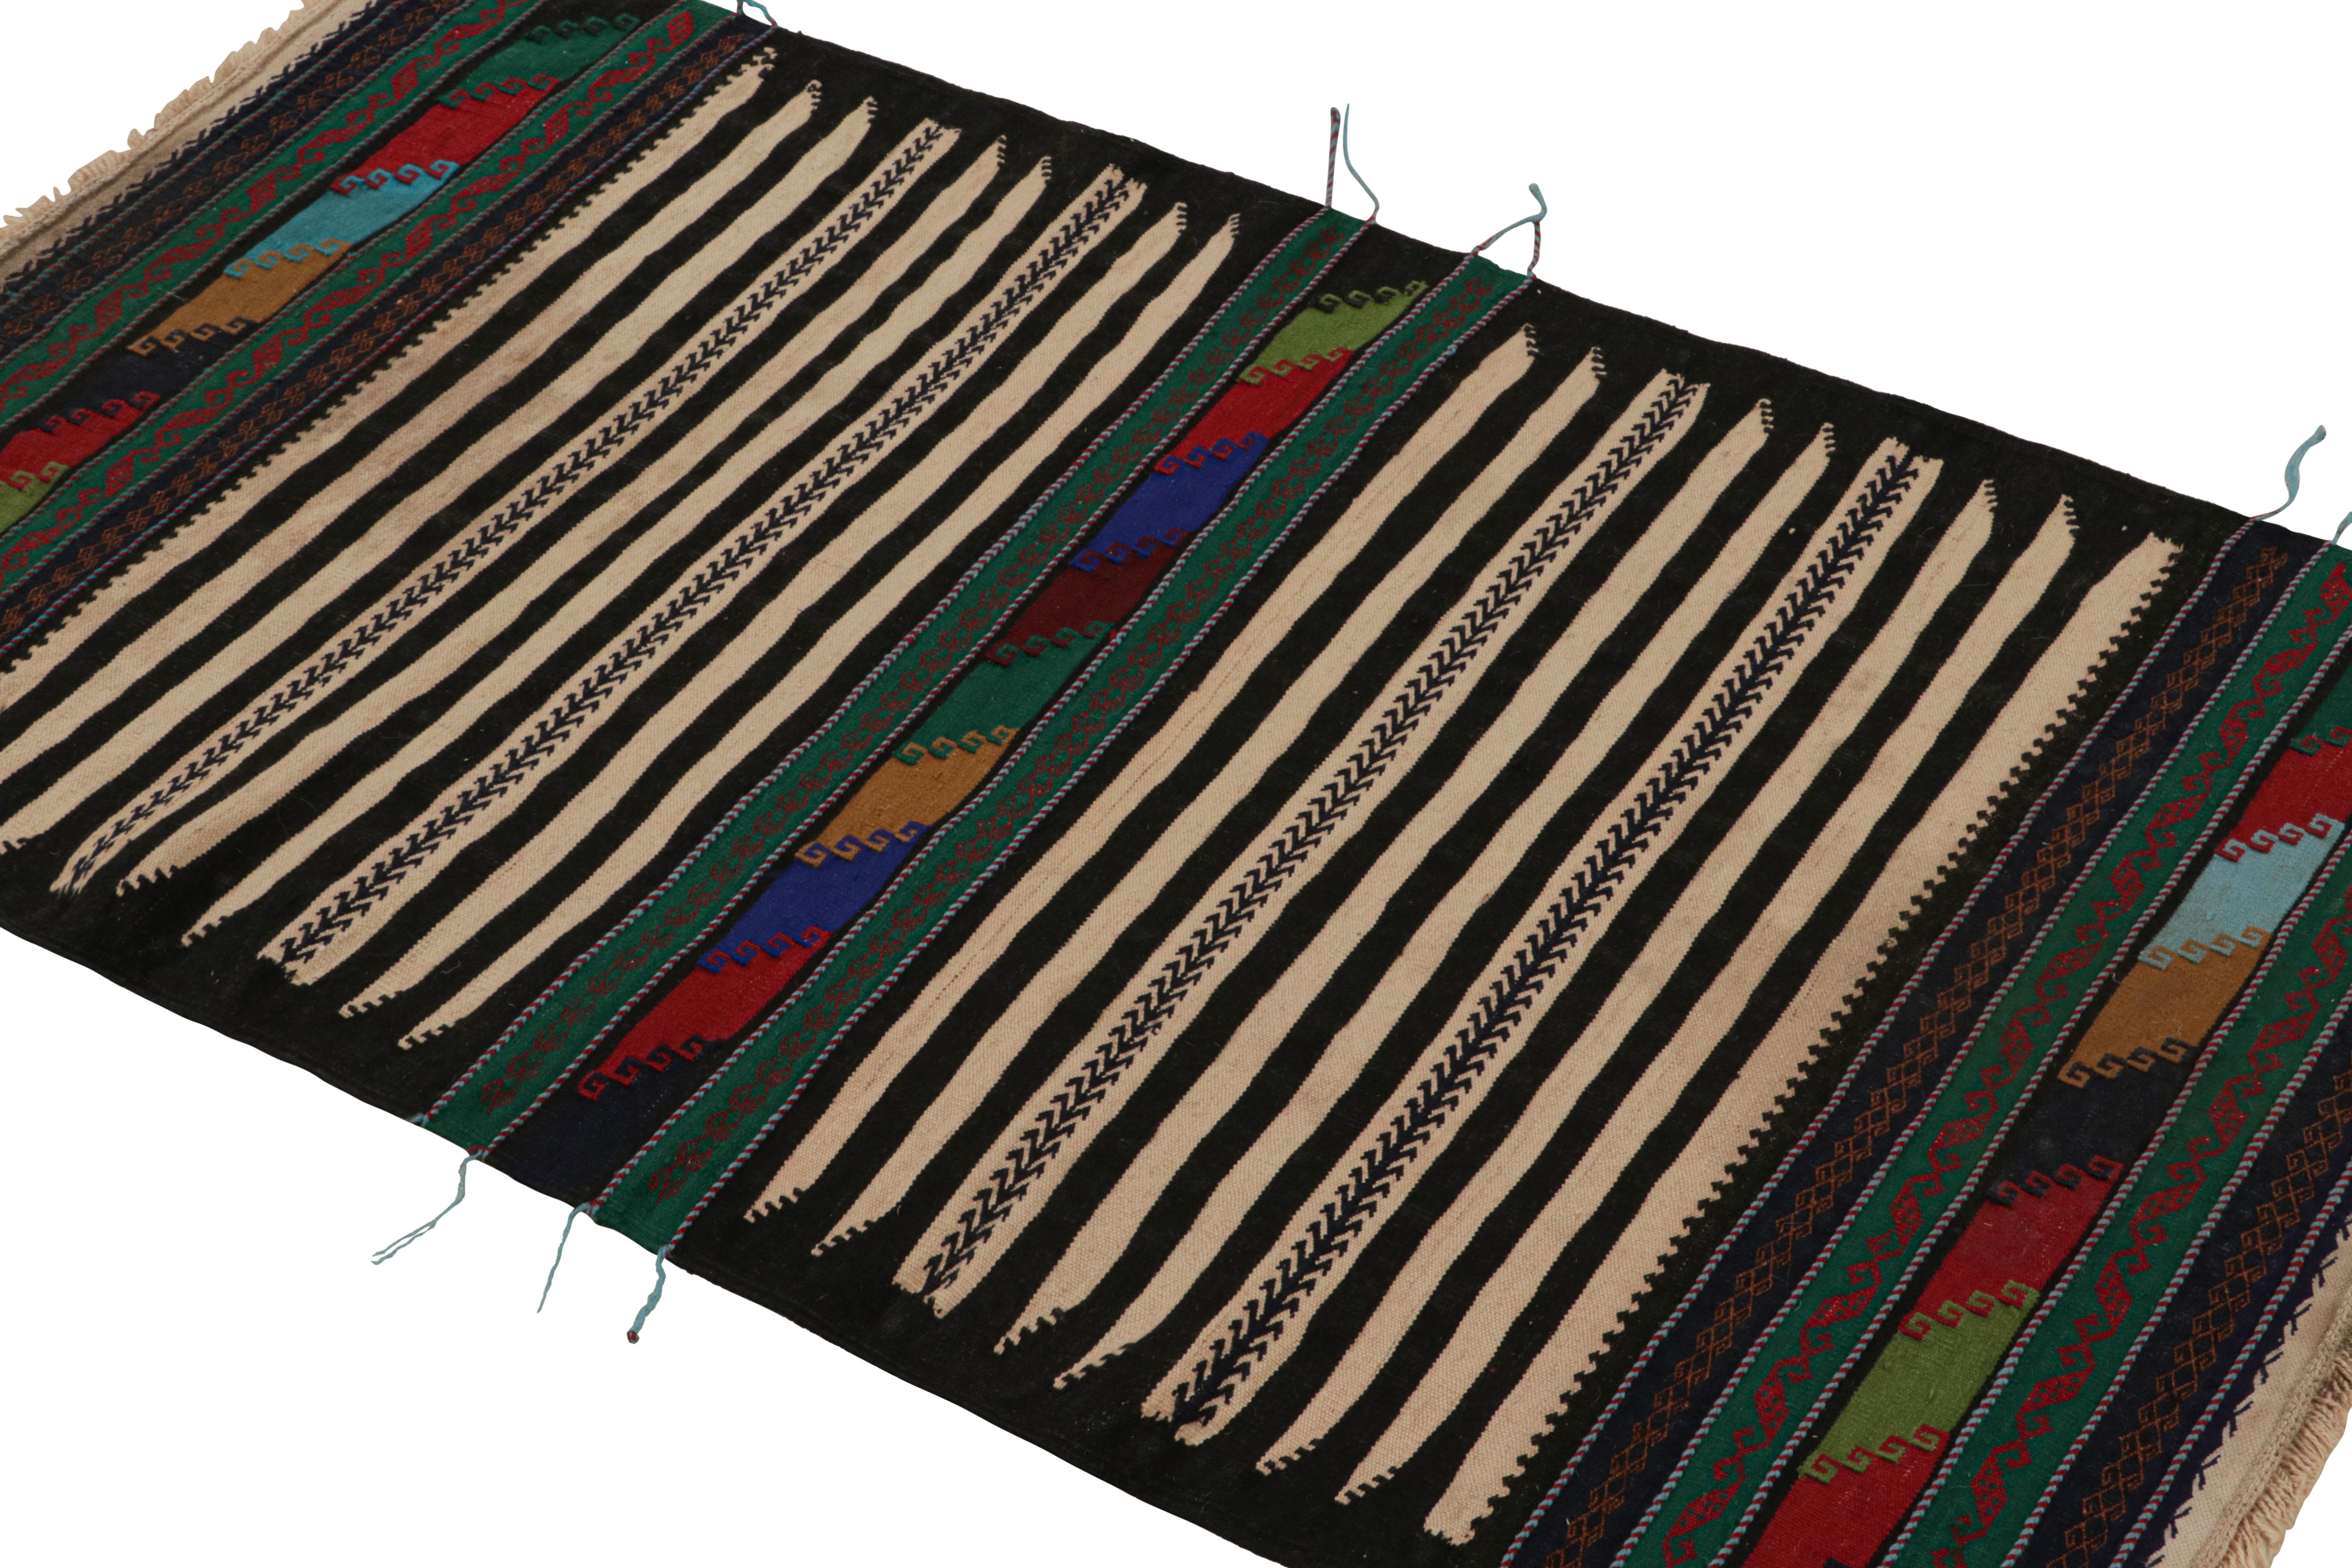 Dieser handgewebte afghanische Kelimteppich (3x4 cm) stammt aus der Zeit um 1950-1960 - eine Stammeszusammenstellung unter den Neuzugängen der Rug & Kilim Collection.

Über das Design:

Eine polychrome Farbgebung mit satten und leuchtenden Tönen